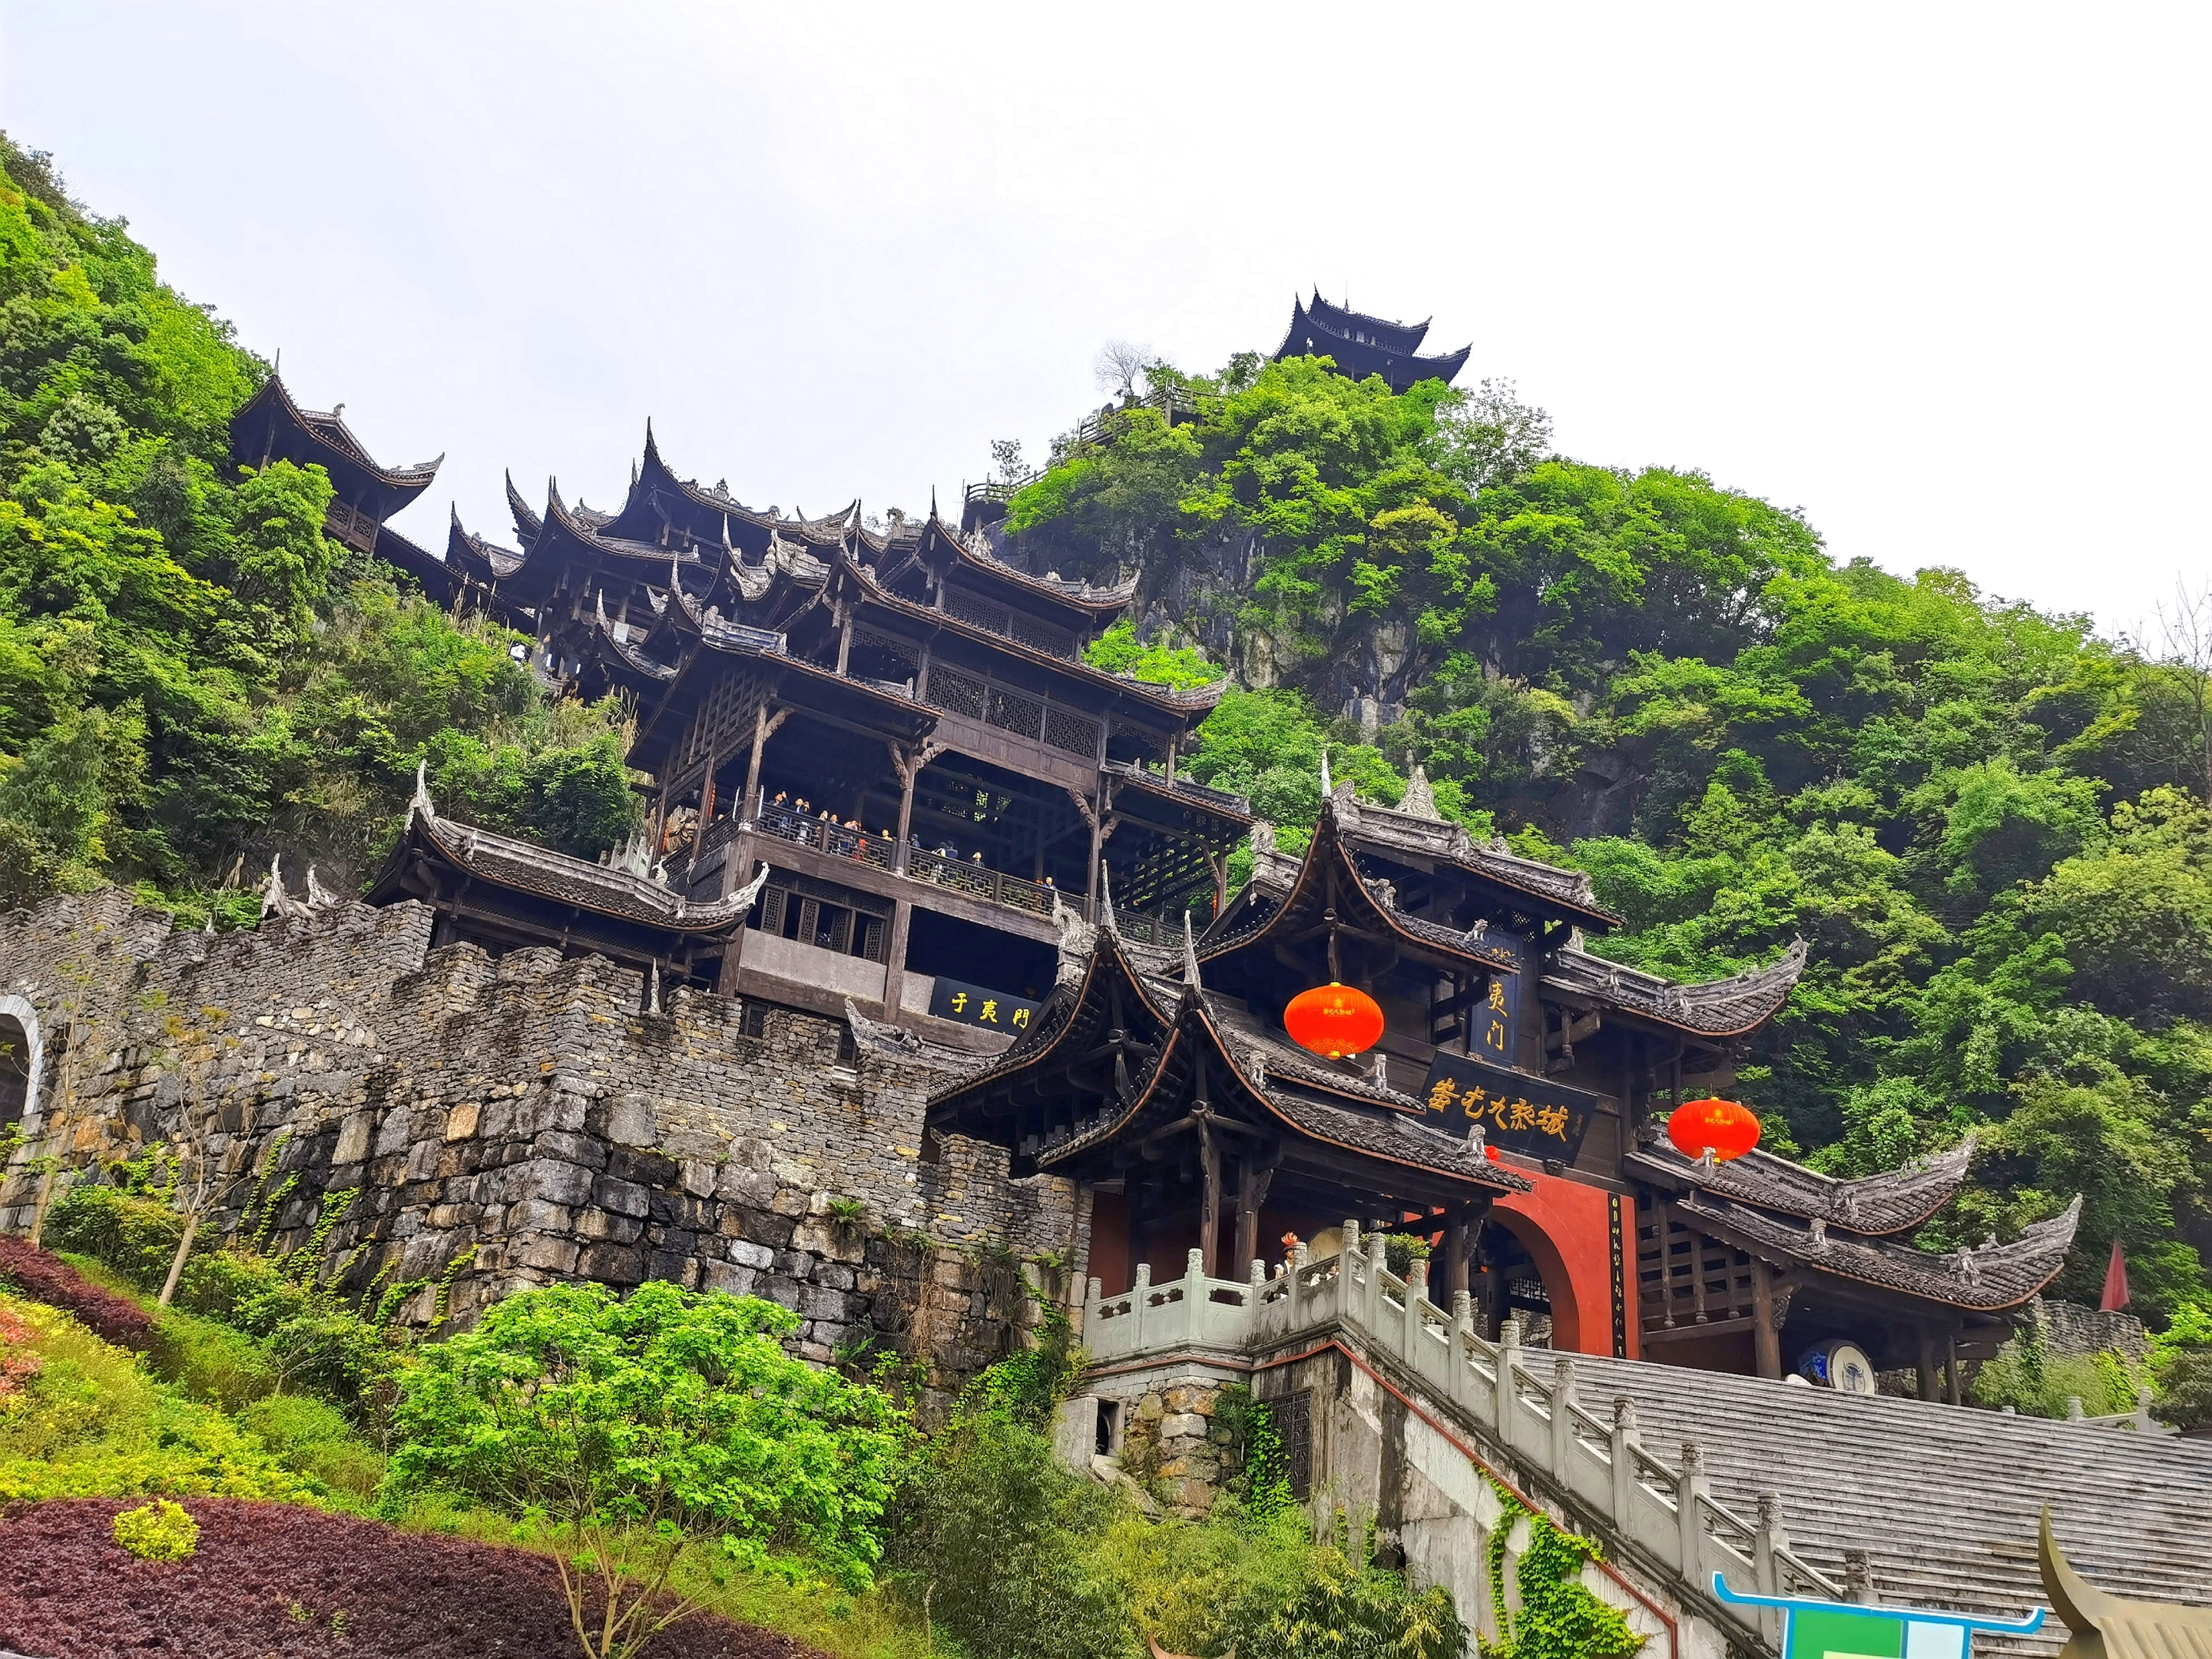 县,是中国最大的苗族传统建筑群,主要建筑包括标志门楼,九道门,九黎宫